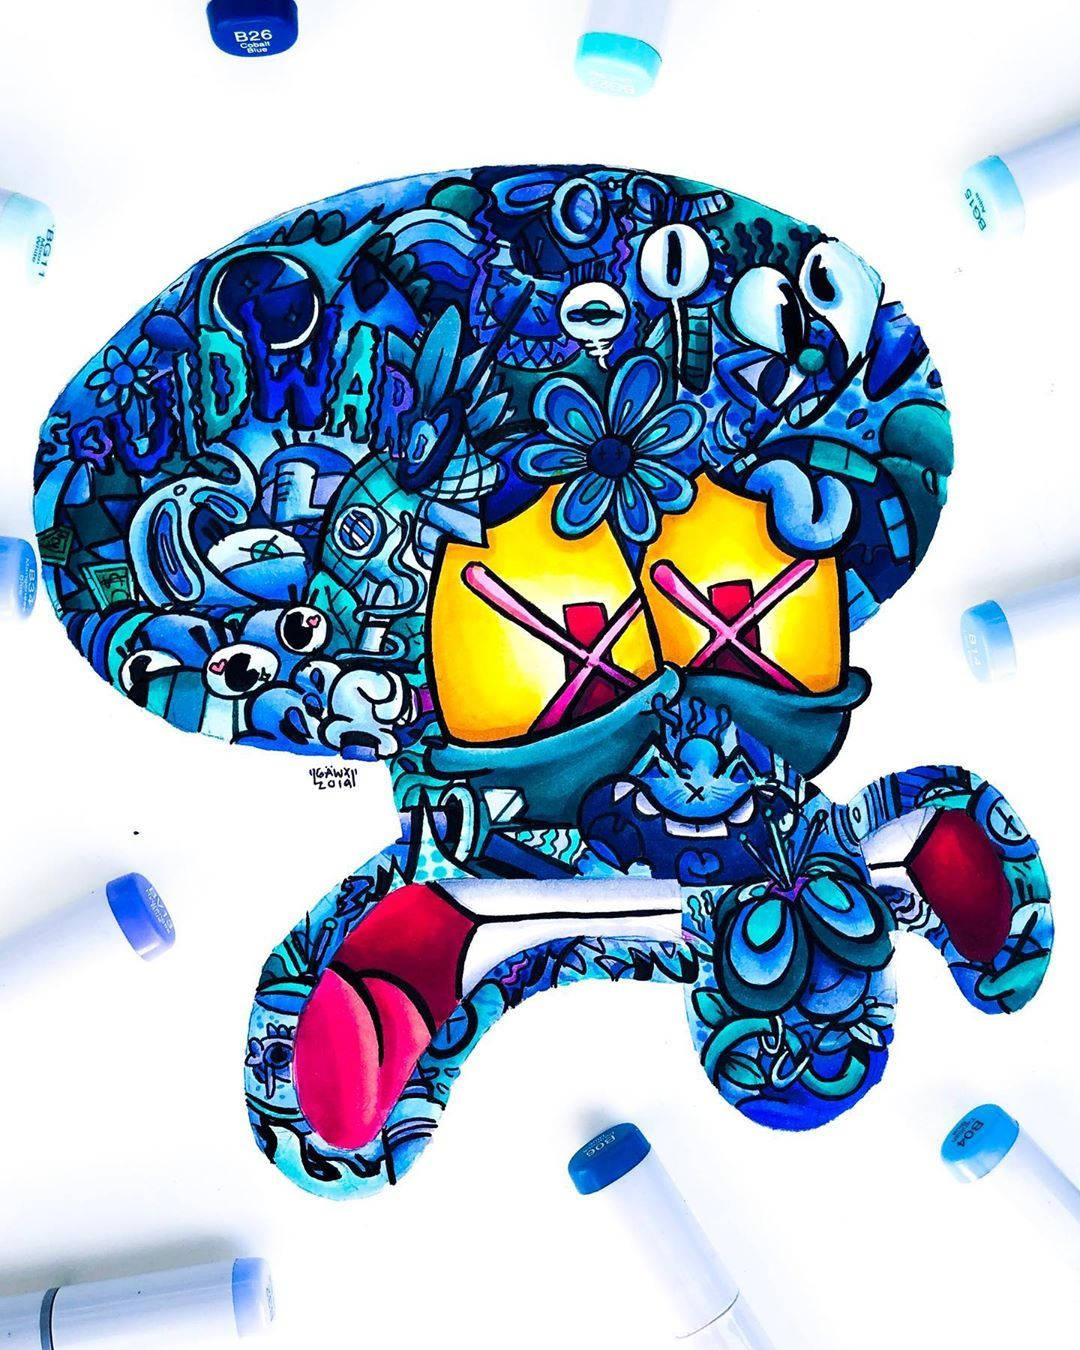 Gawx Art Blue Squidward Background